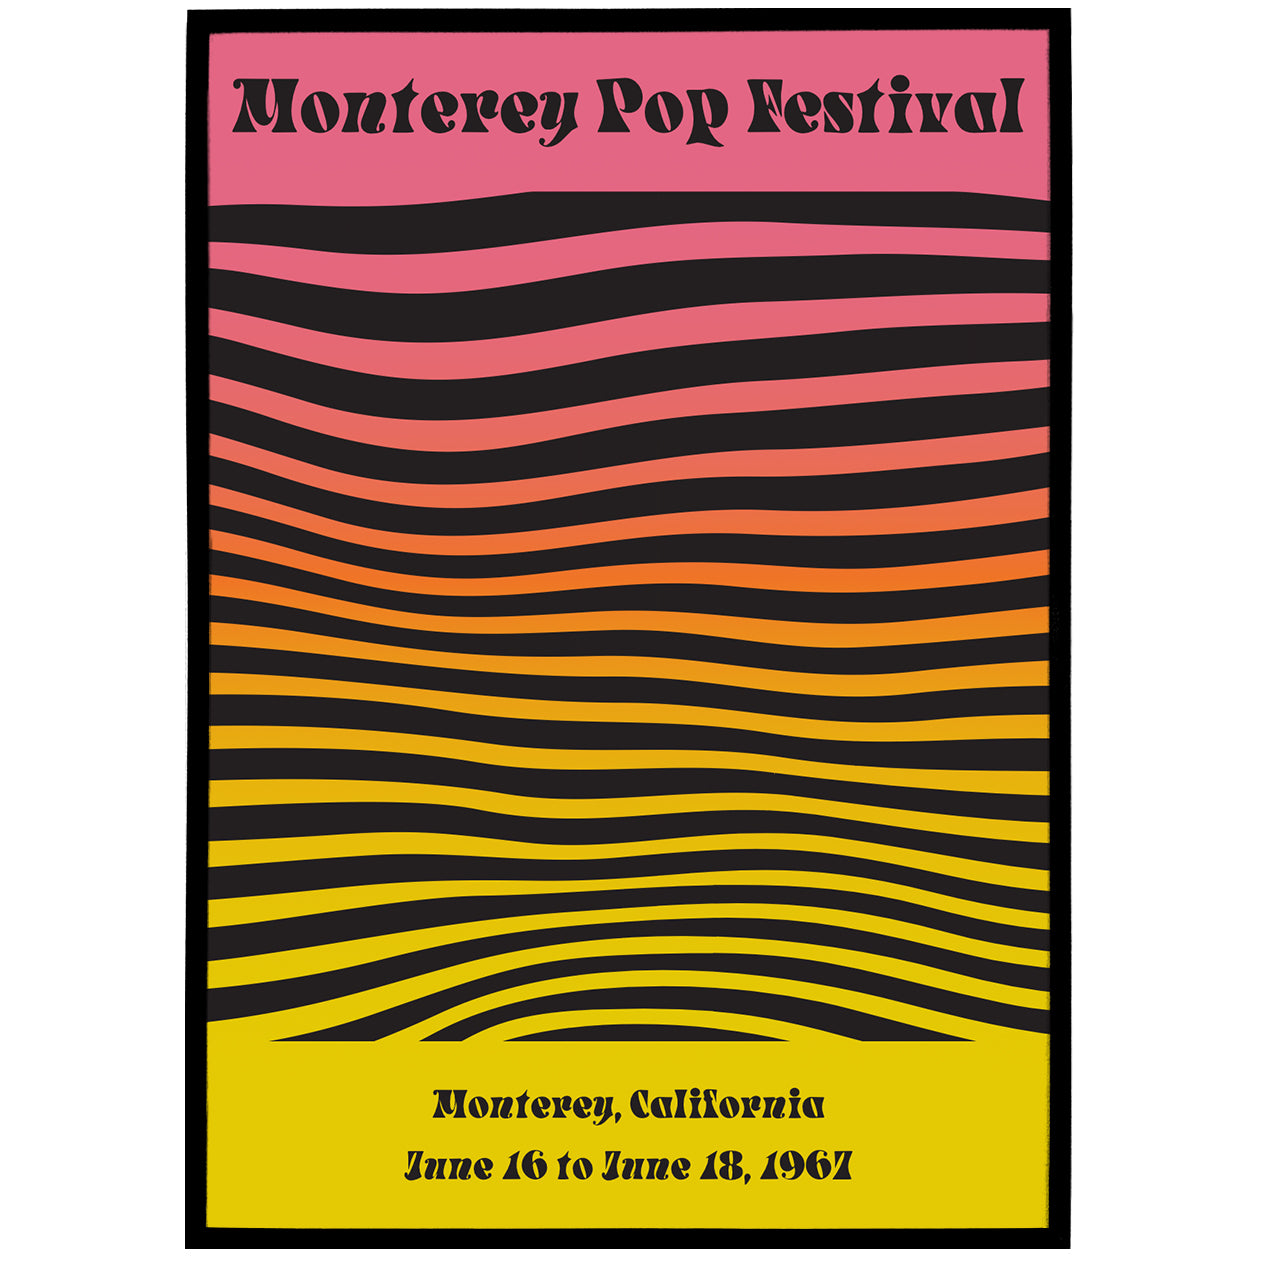 Monterey Pop Festival 1967 Vintage Poster